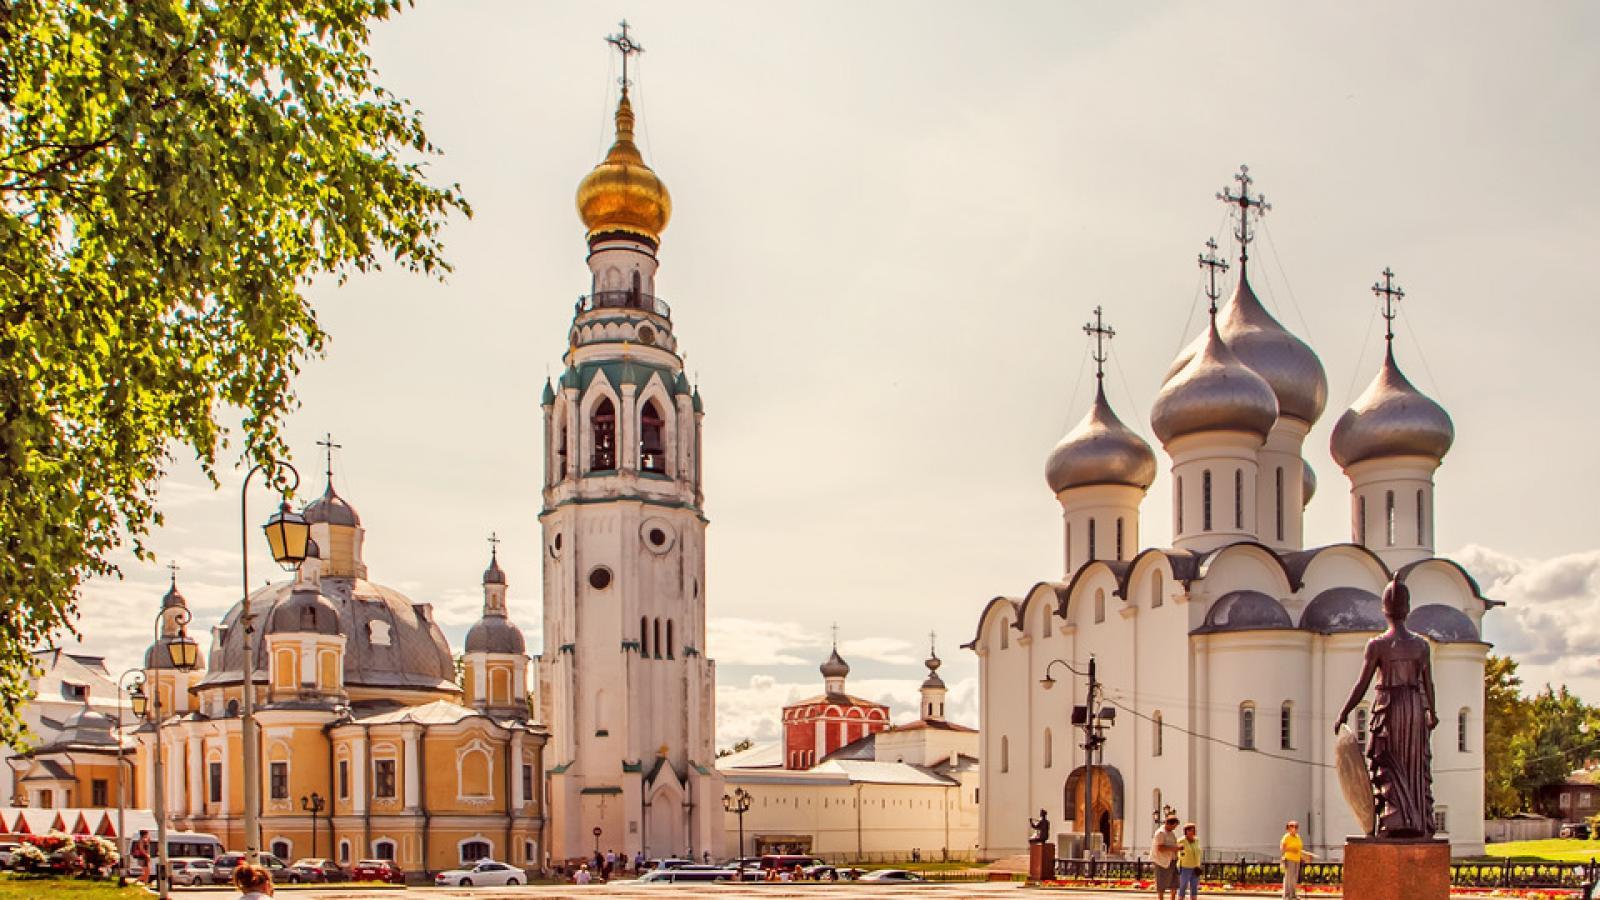 Вологда вошла в число лучших российских городов для путешествий в будущем году